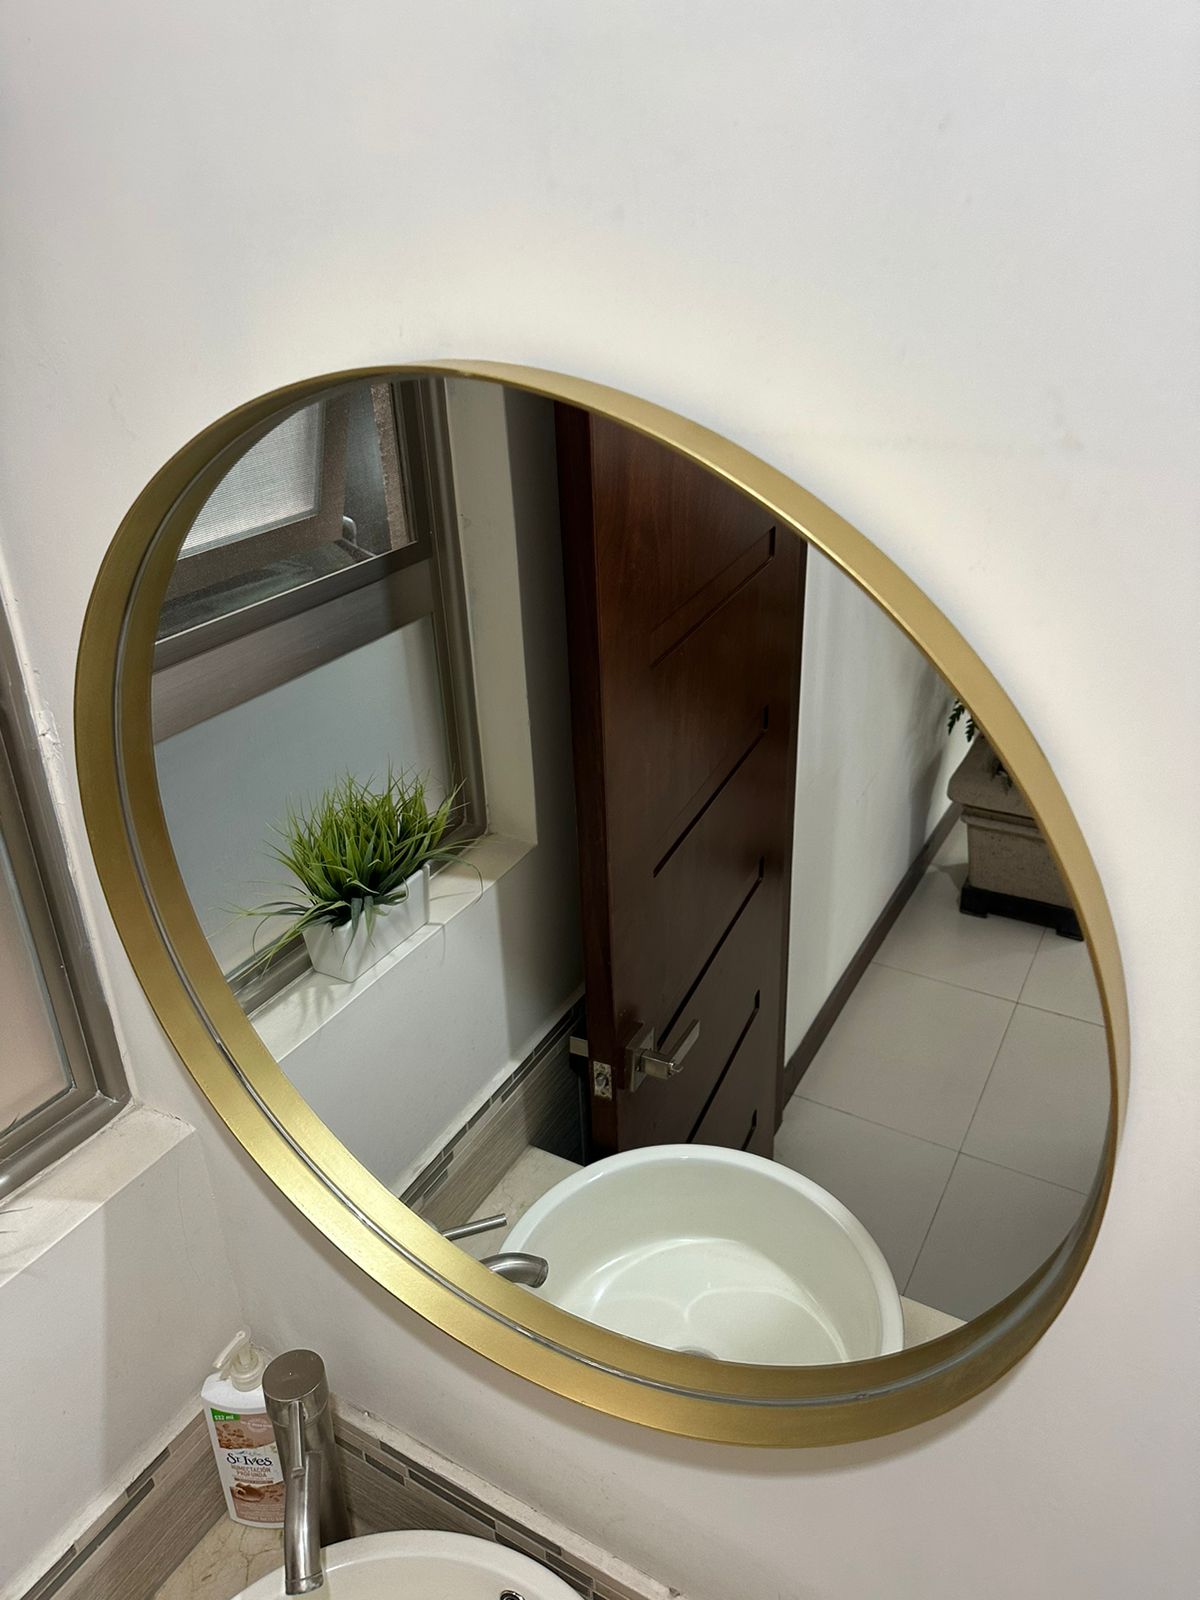  PILOCOS Espejo redondo con marco dorado para baño